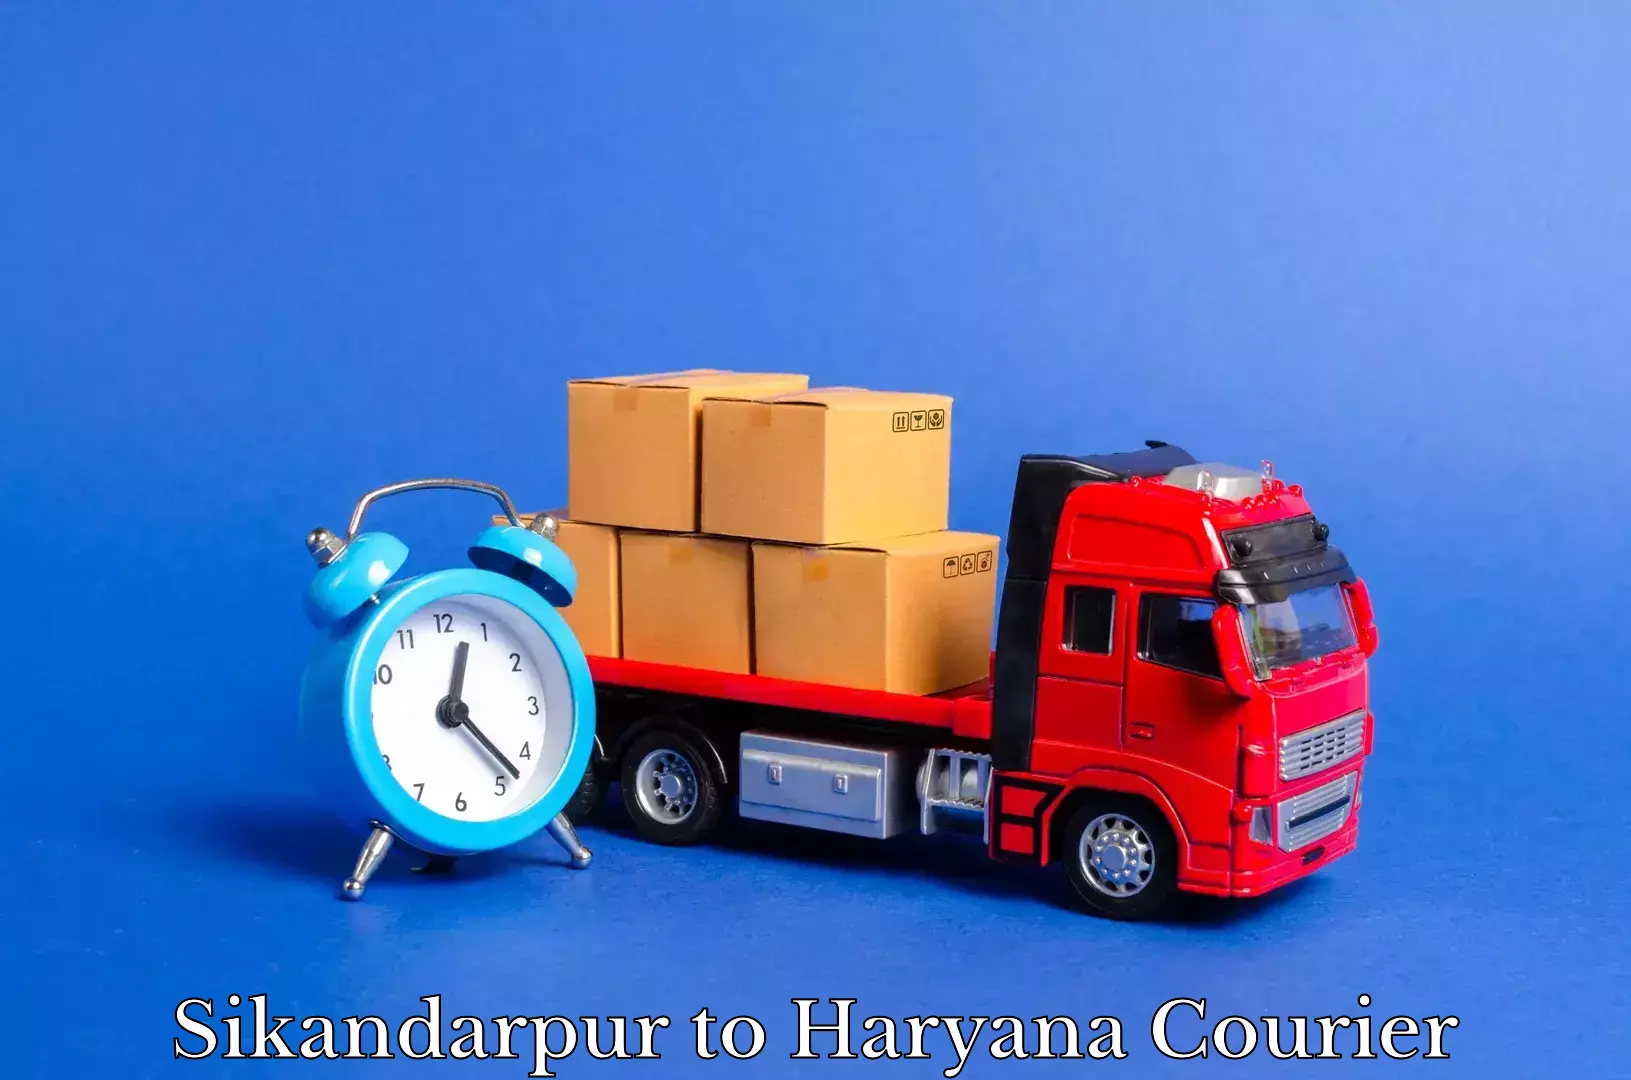 Furniture transport service in Sikandarpur to Kurukshetra University